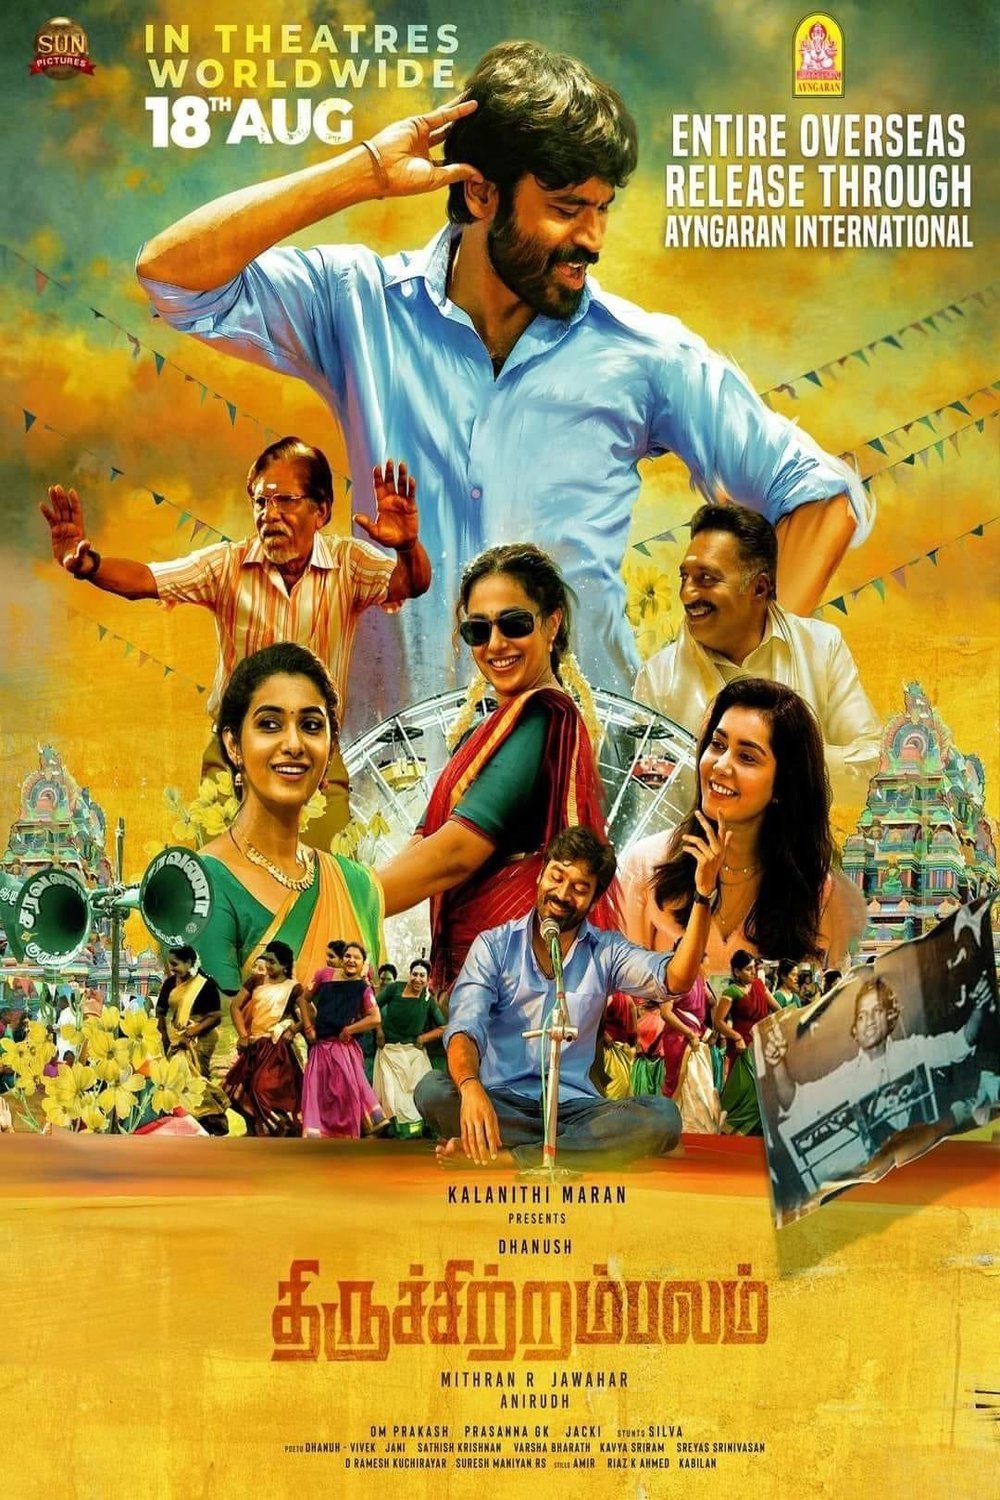 Tamil poster of the movie Thiruchitrambalam